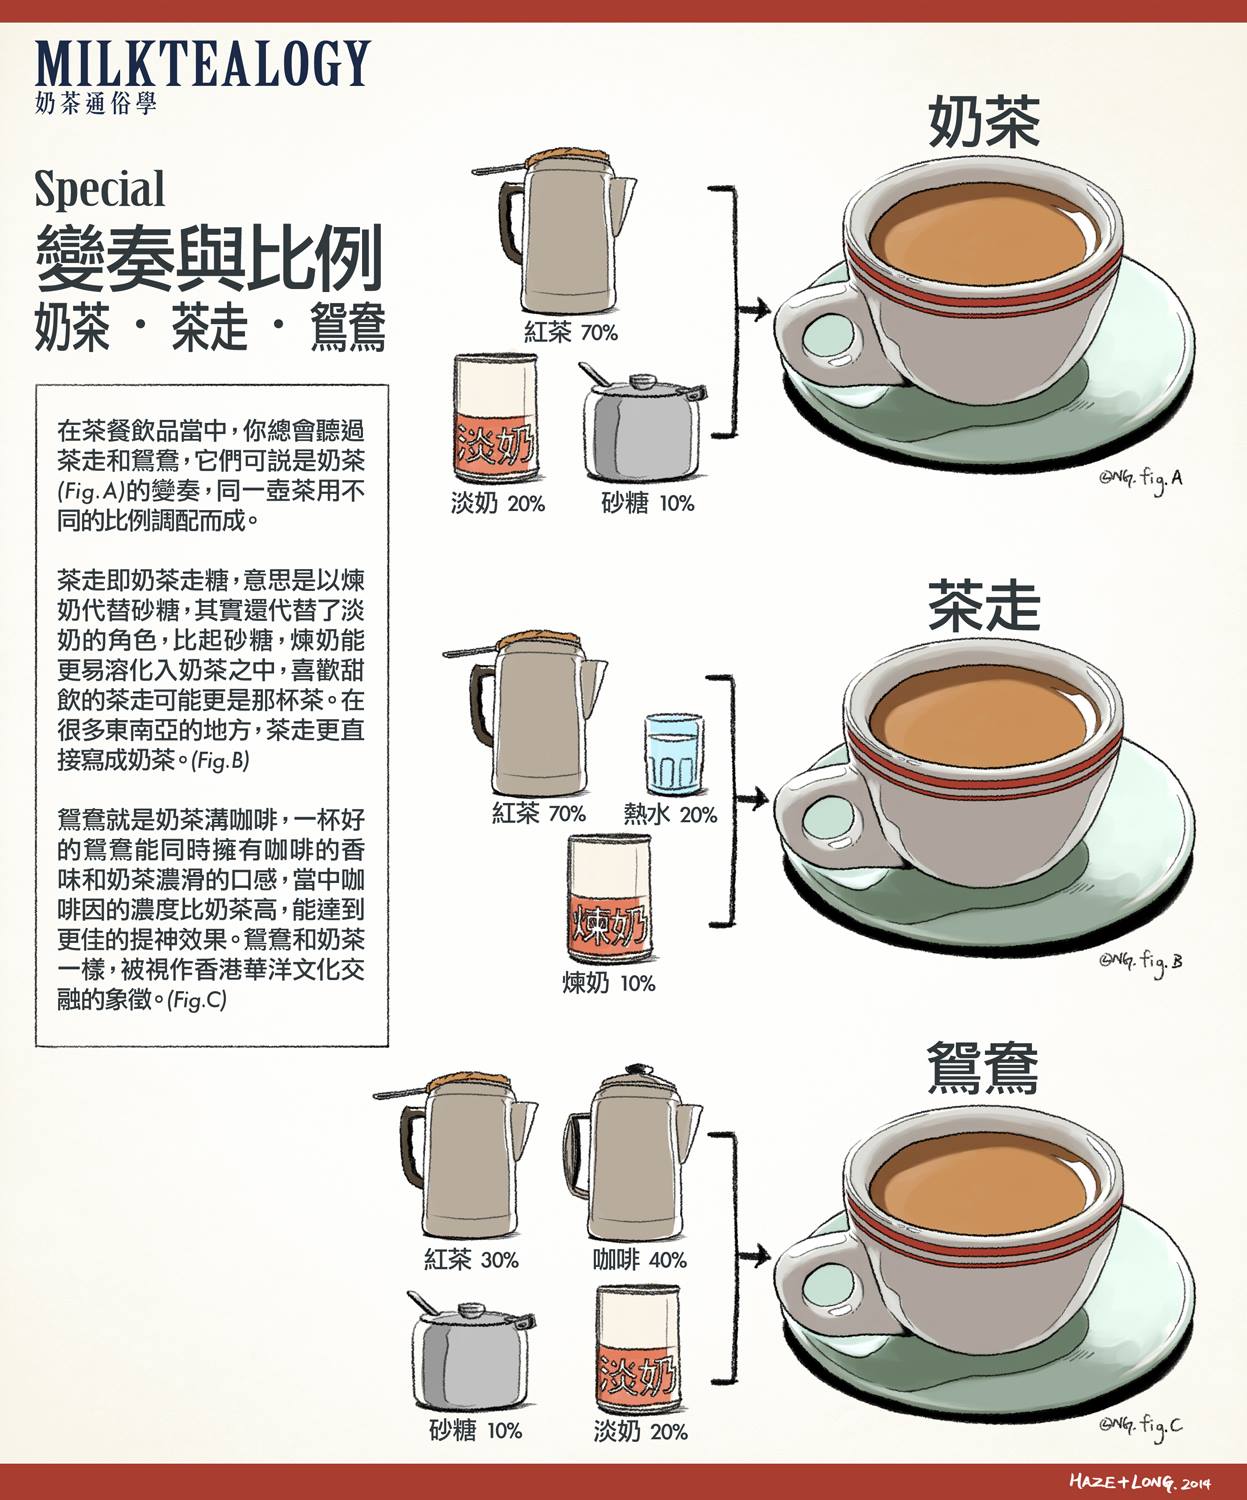 捷榮拼配茶 (港式奶茶專用) Hong Kong Style Blended Tea 5 lb